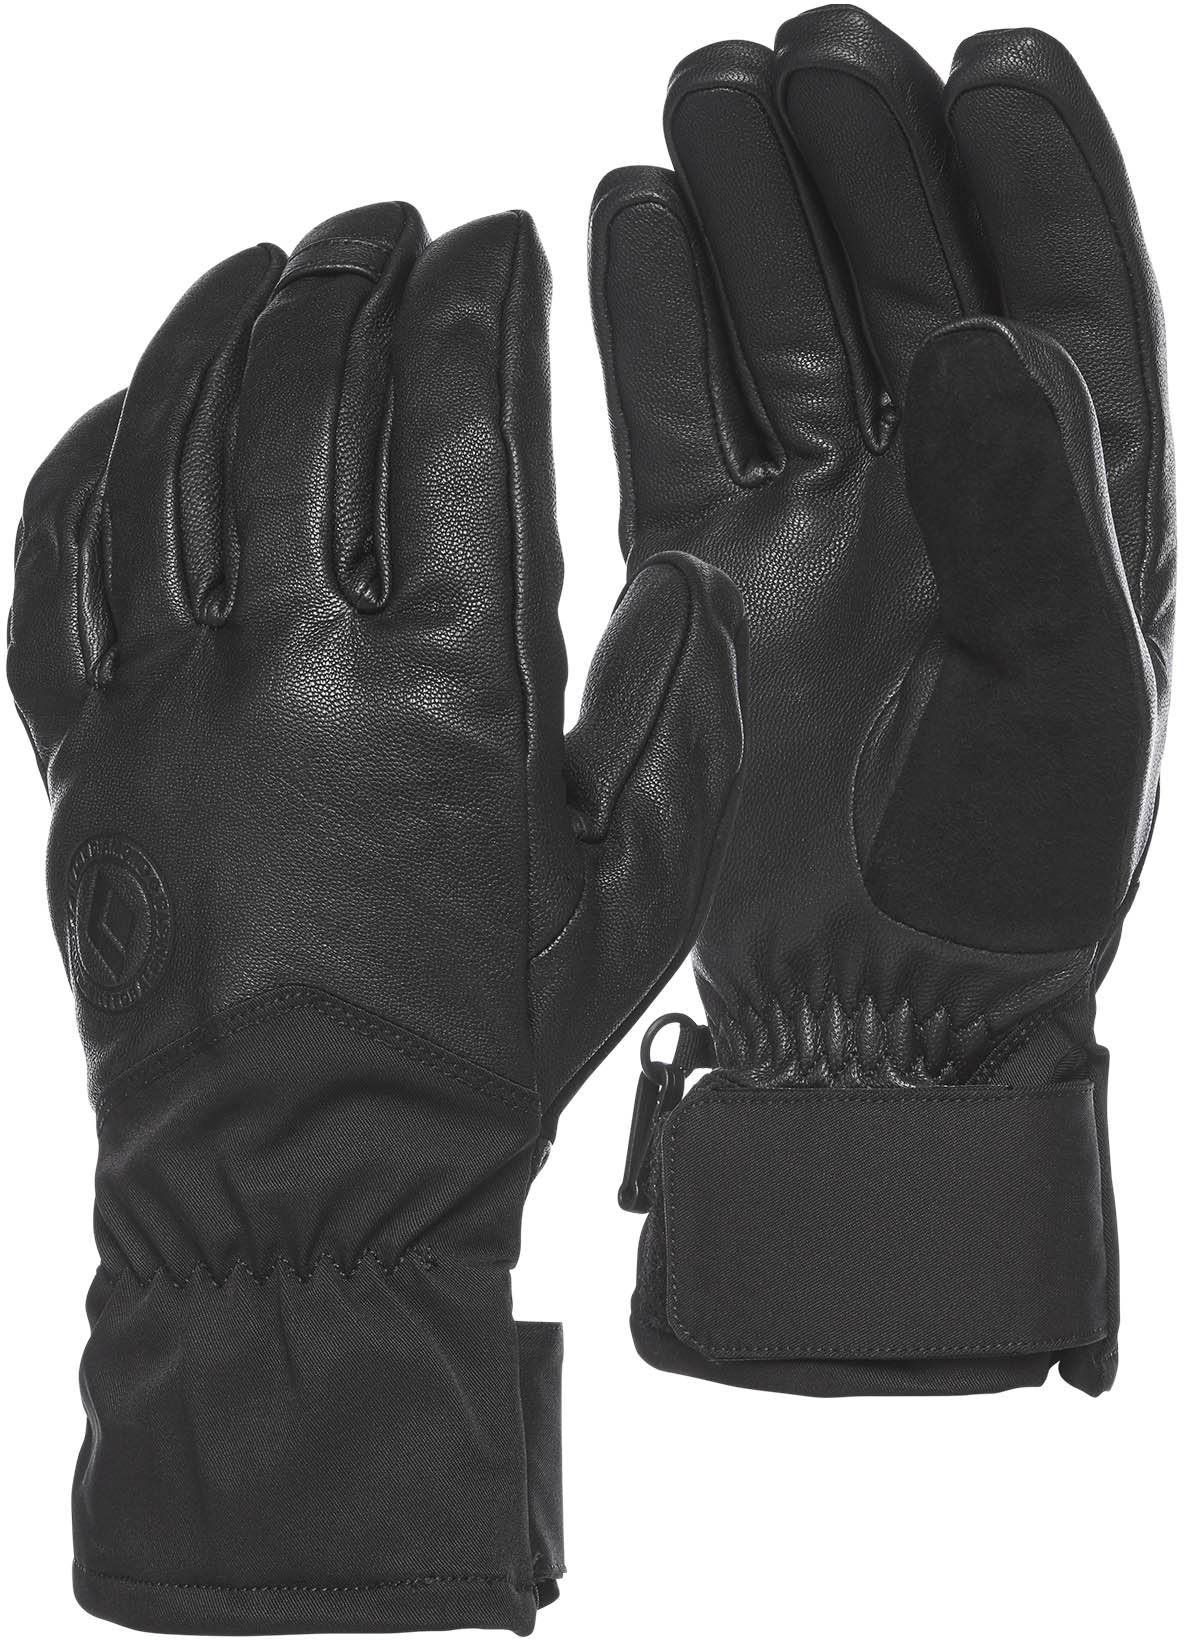 Black Diamond Tour Gloves